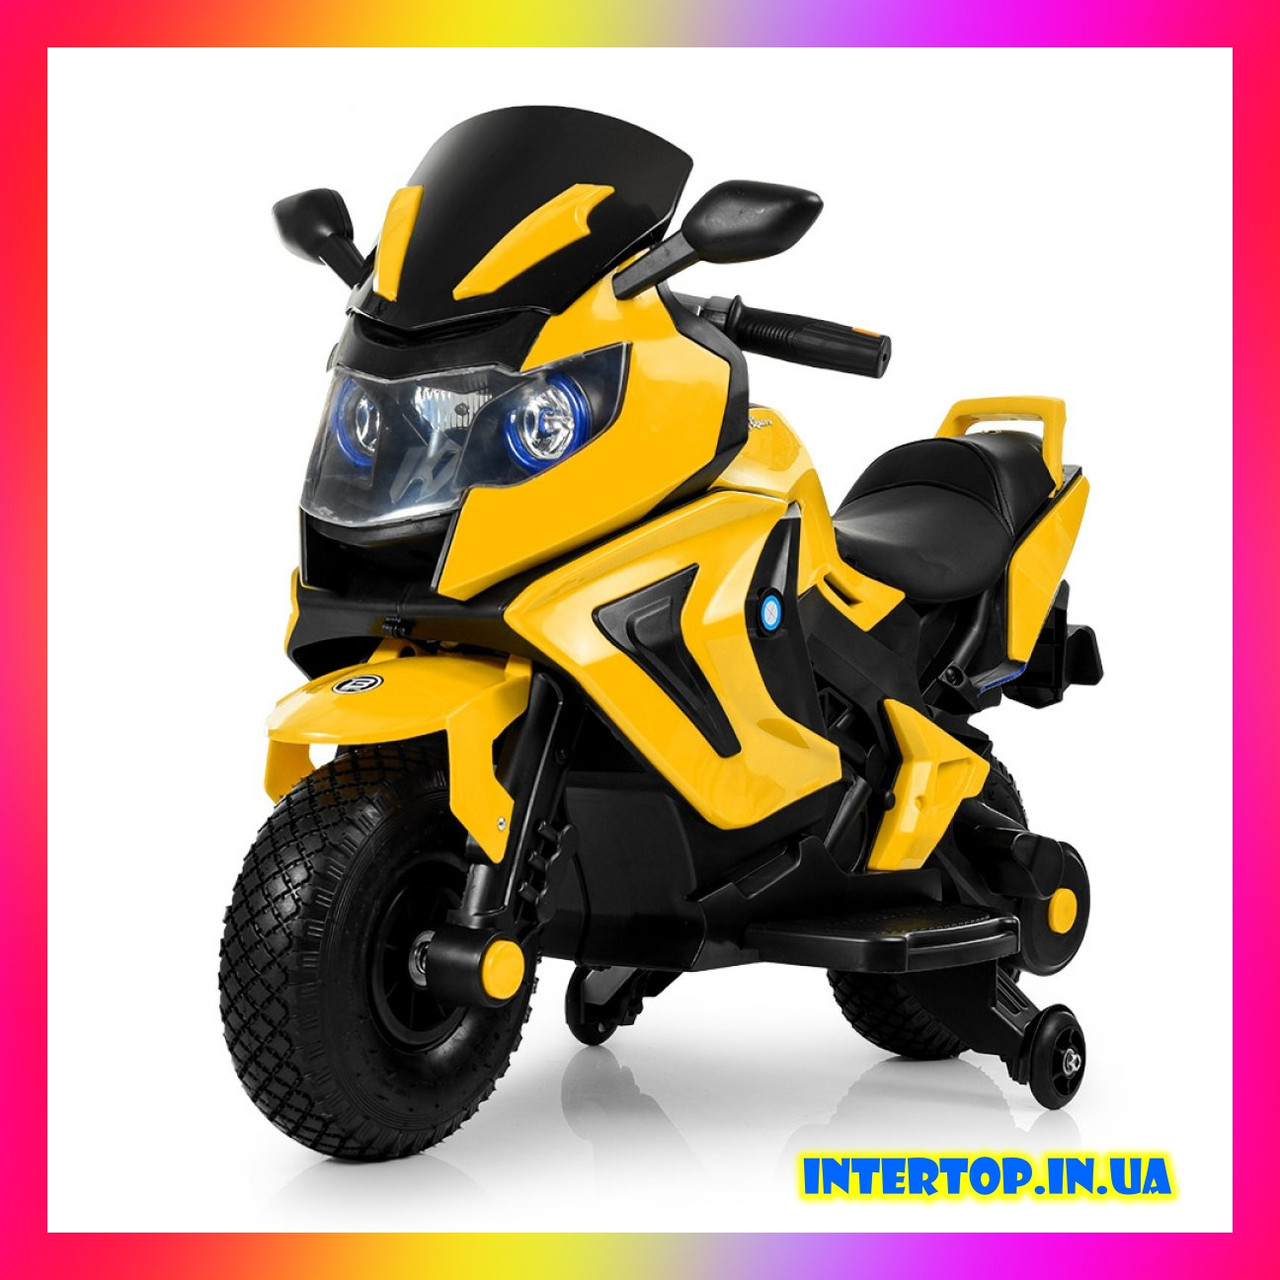 Дитячий електромотоцикл BMW на акумуляторі з гумовими надувними колесами M 3681 жовтий для дітей 3-8 років